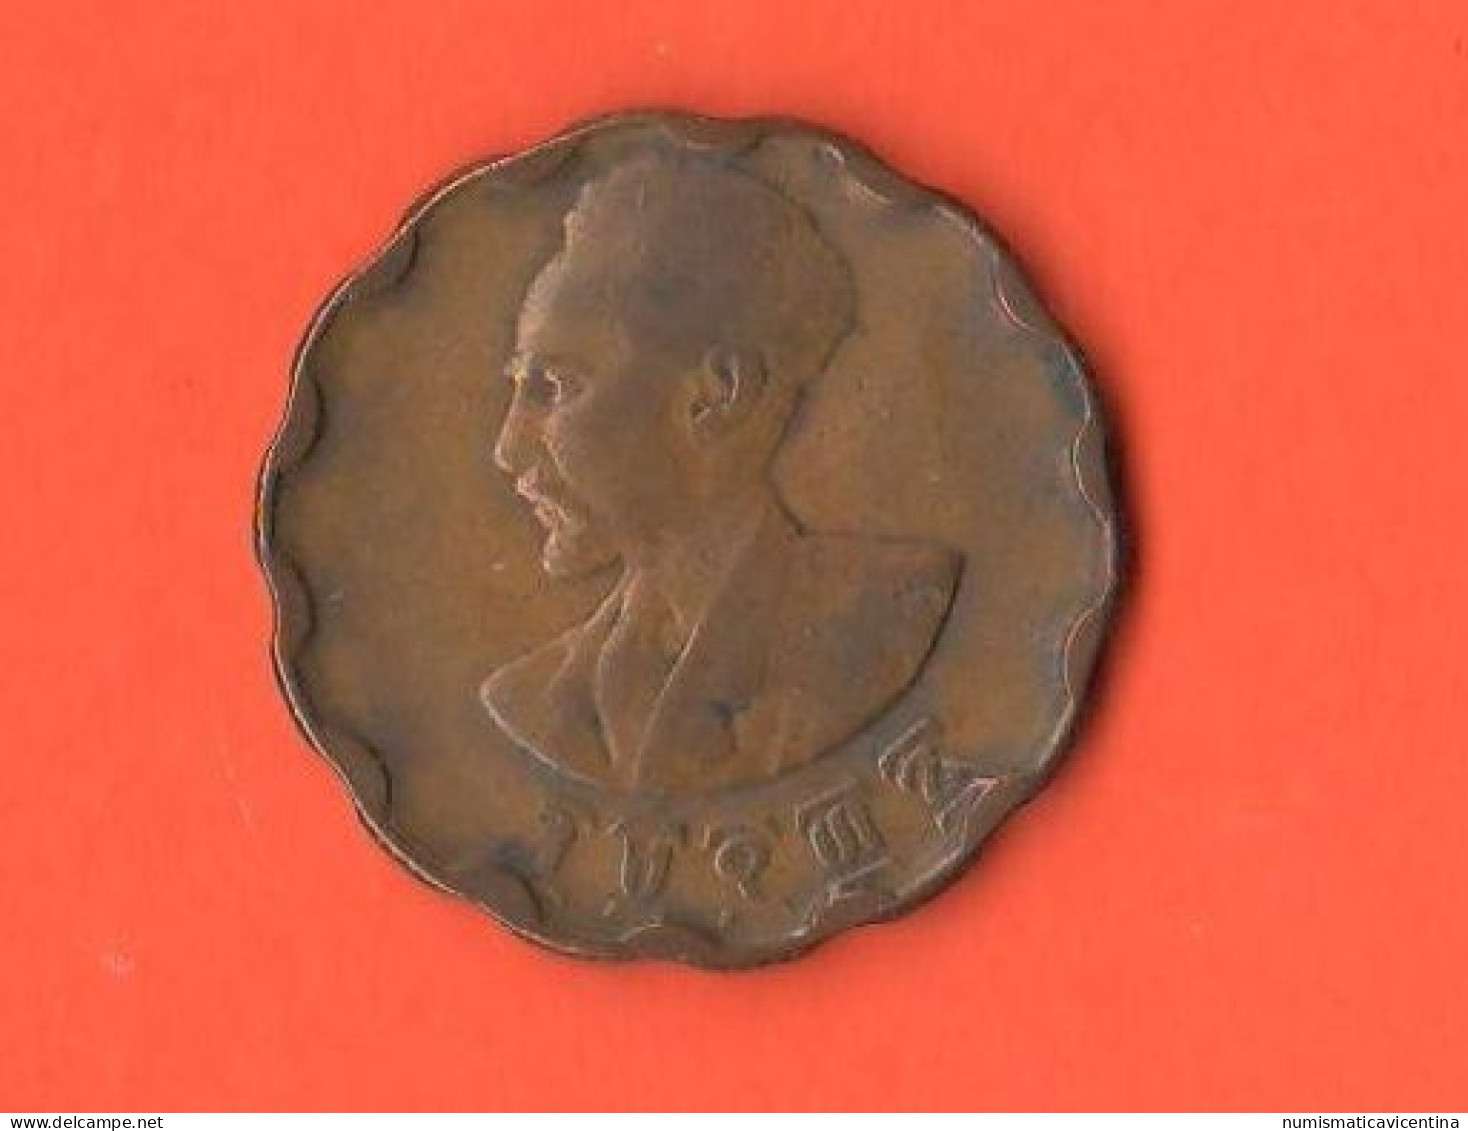 Etiopia 25 Cents 1936 Haile Selassie I° Ethiopia Copper Coin - Ethiopië